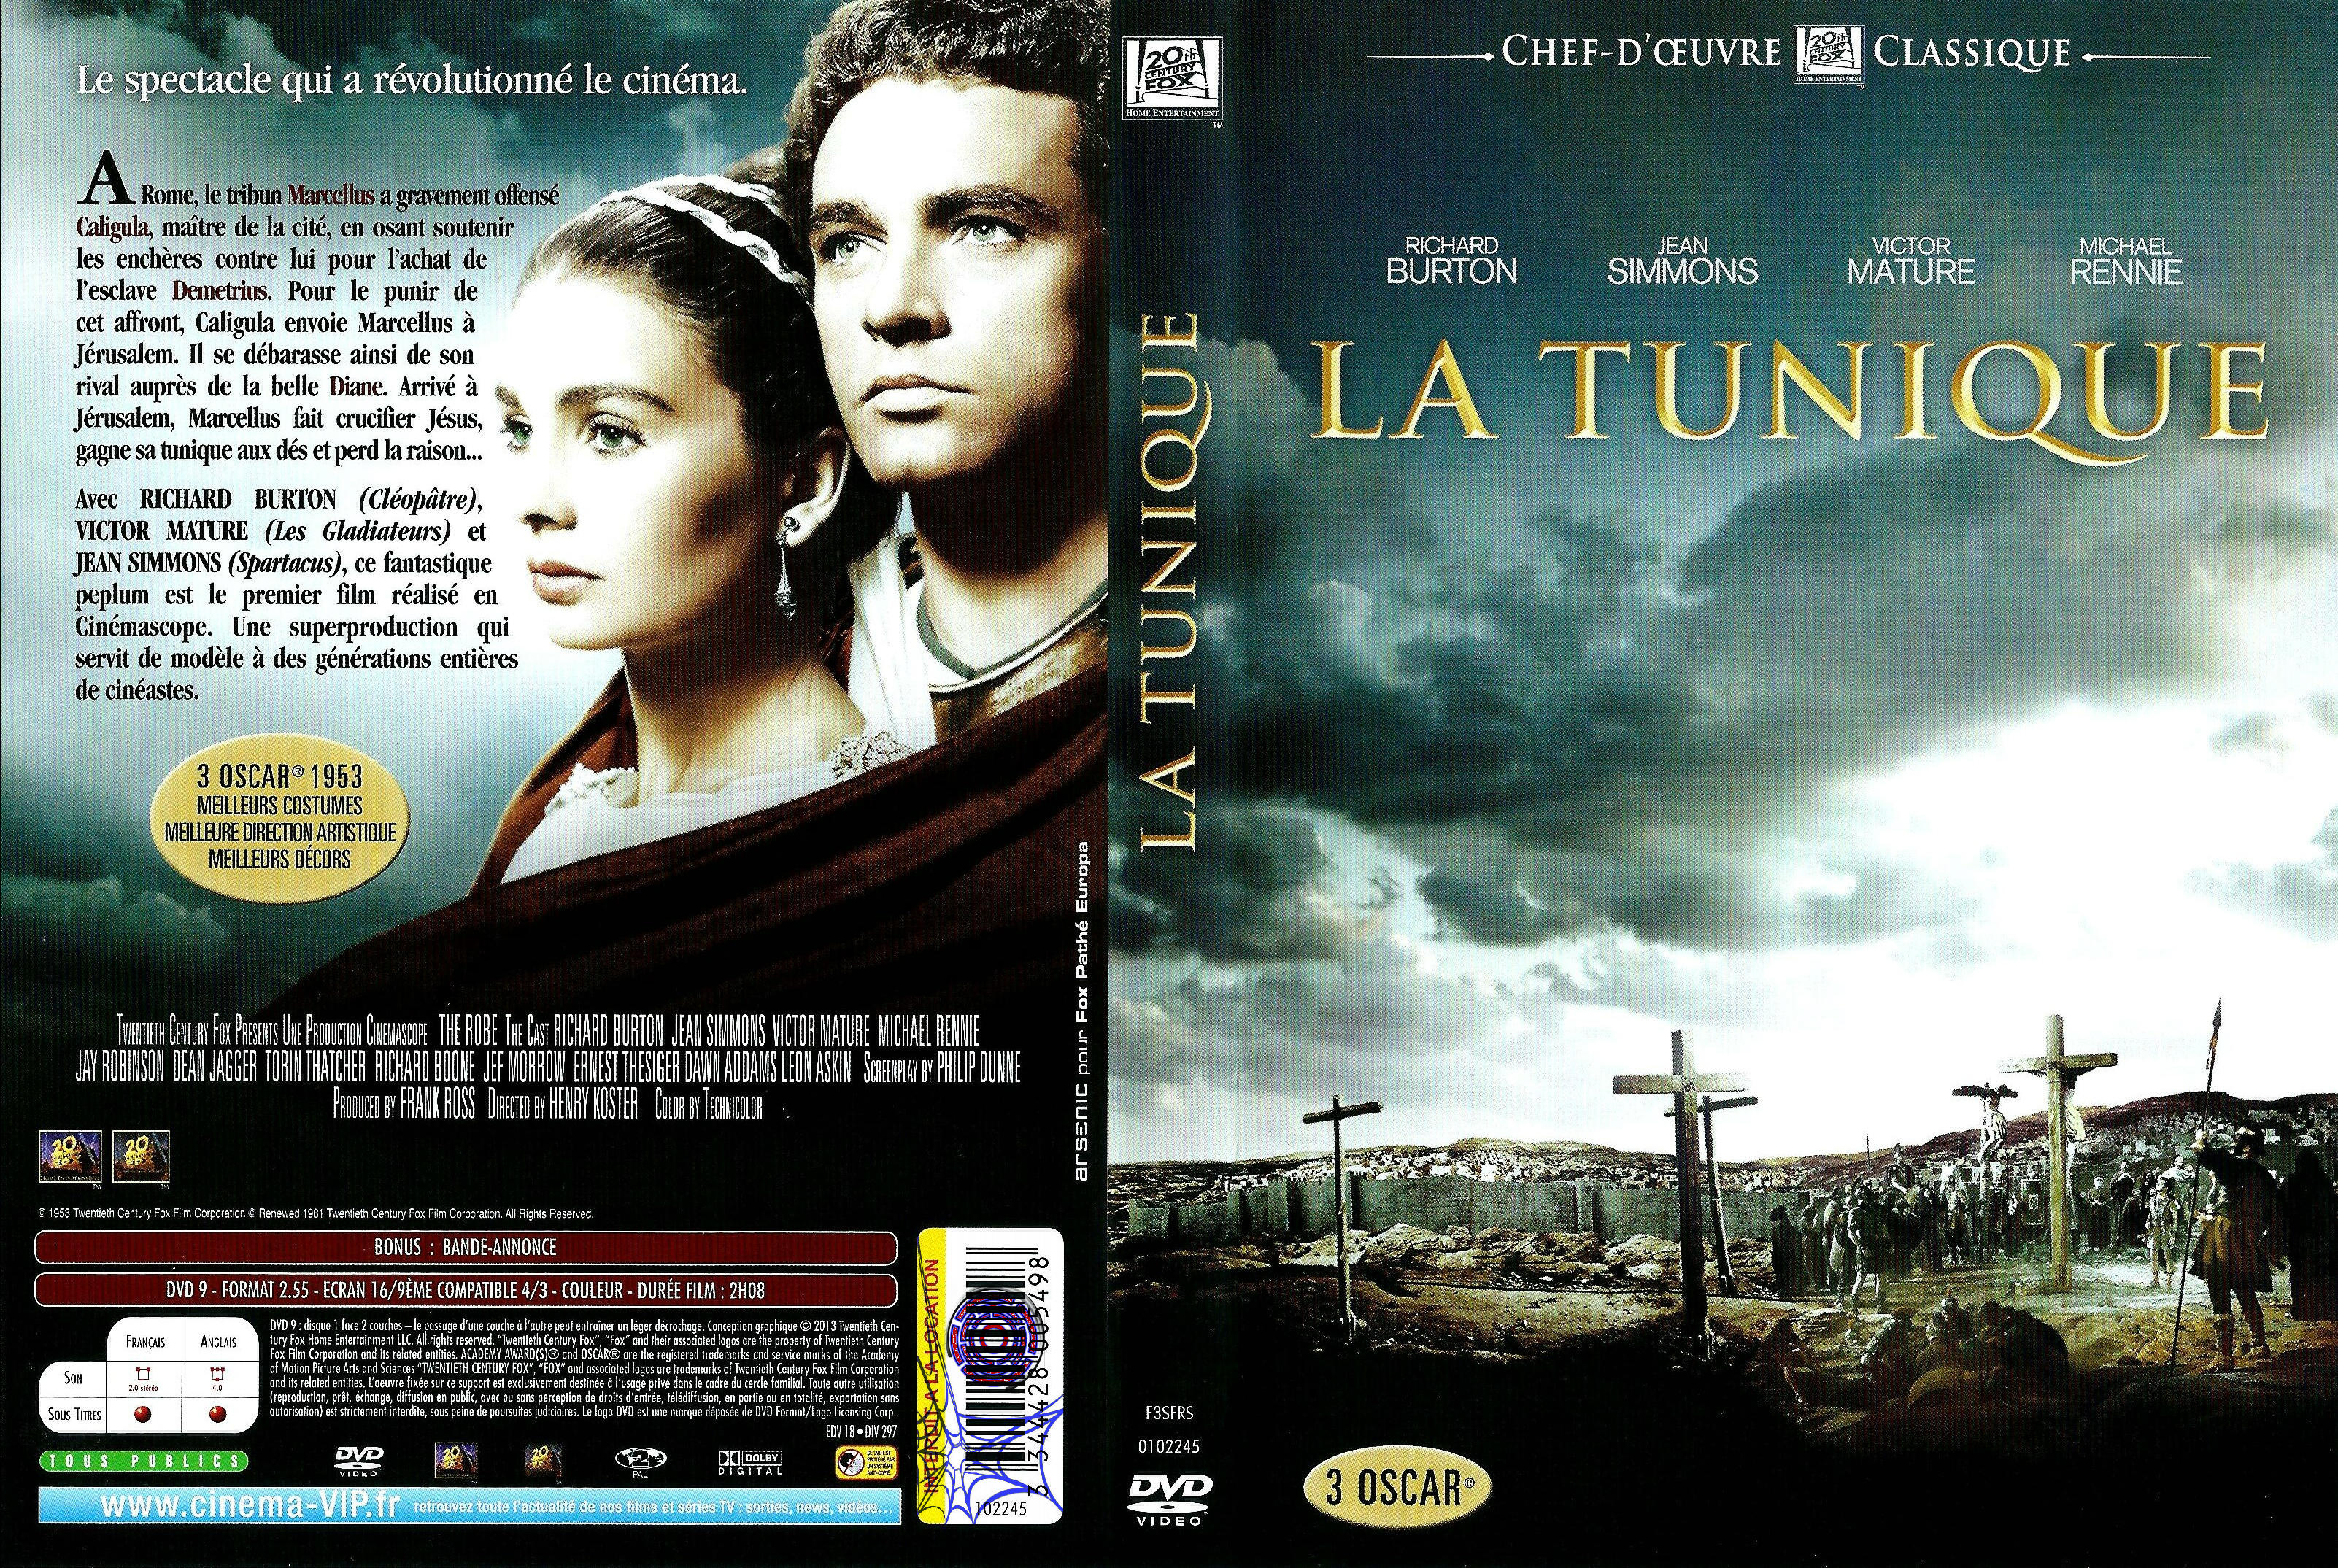 Jaquette DVD La Tunique v3